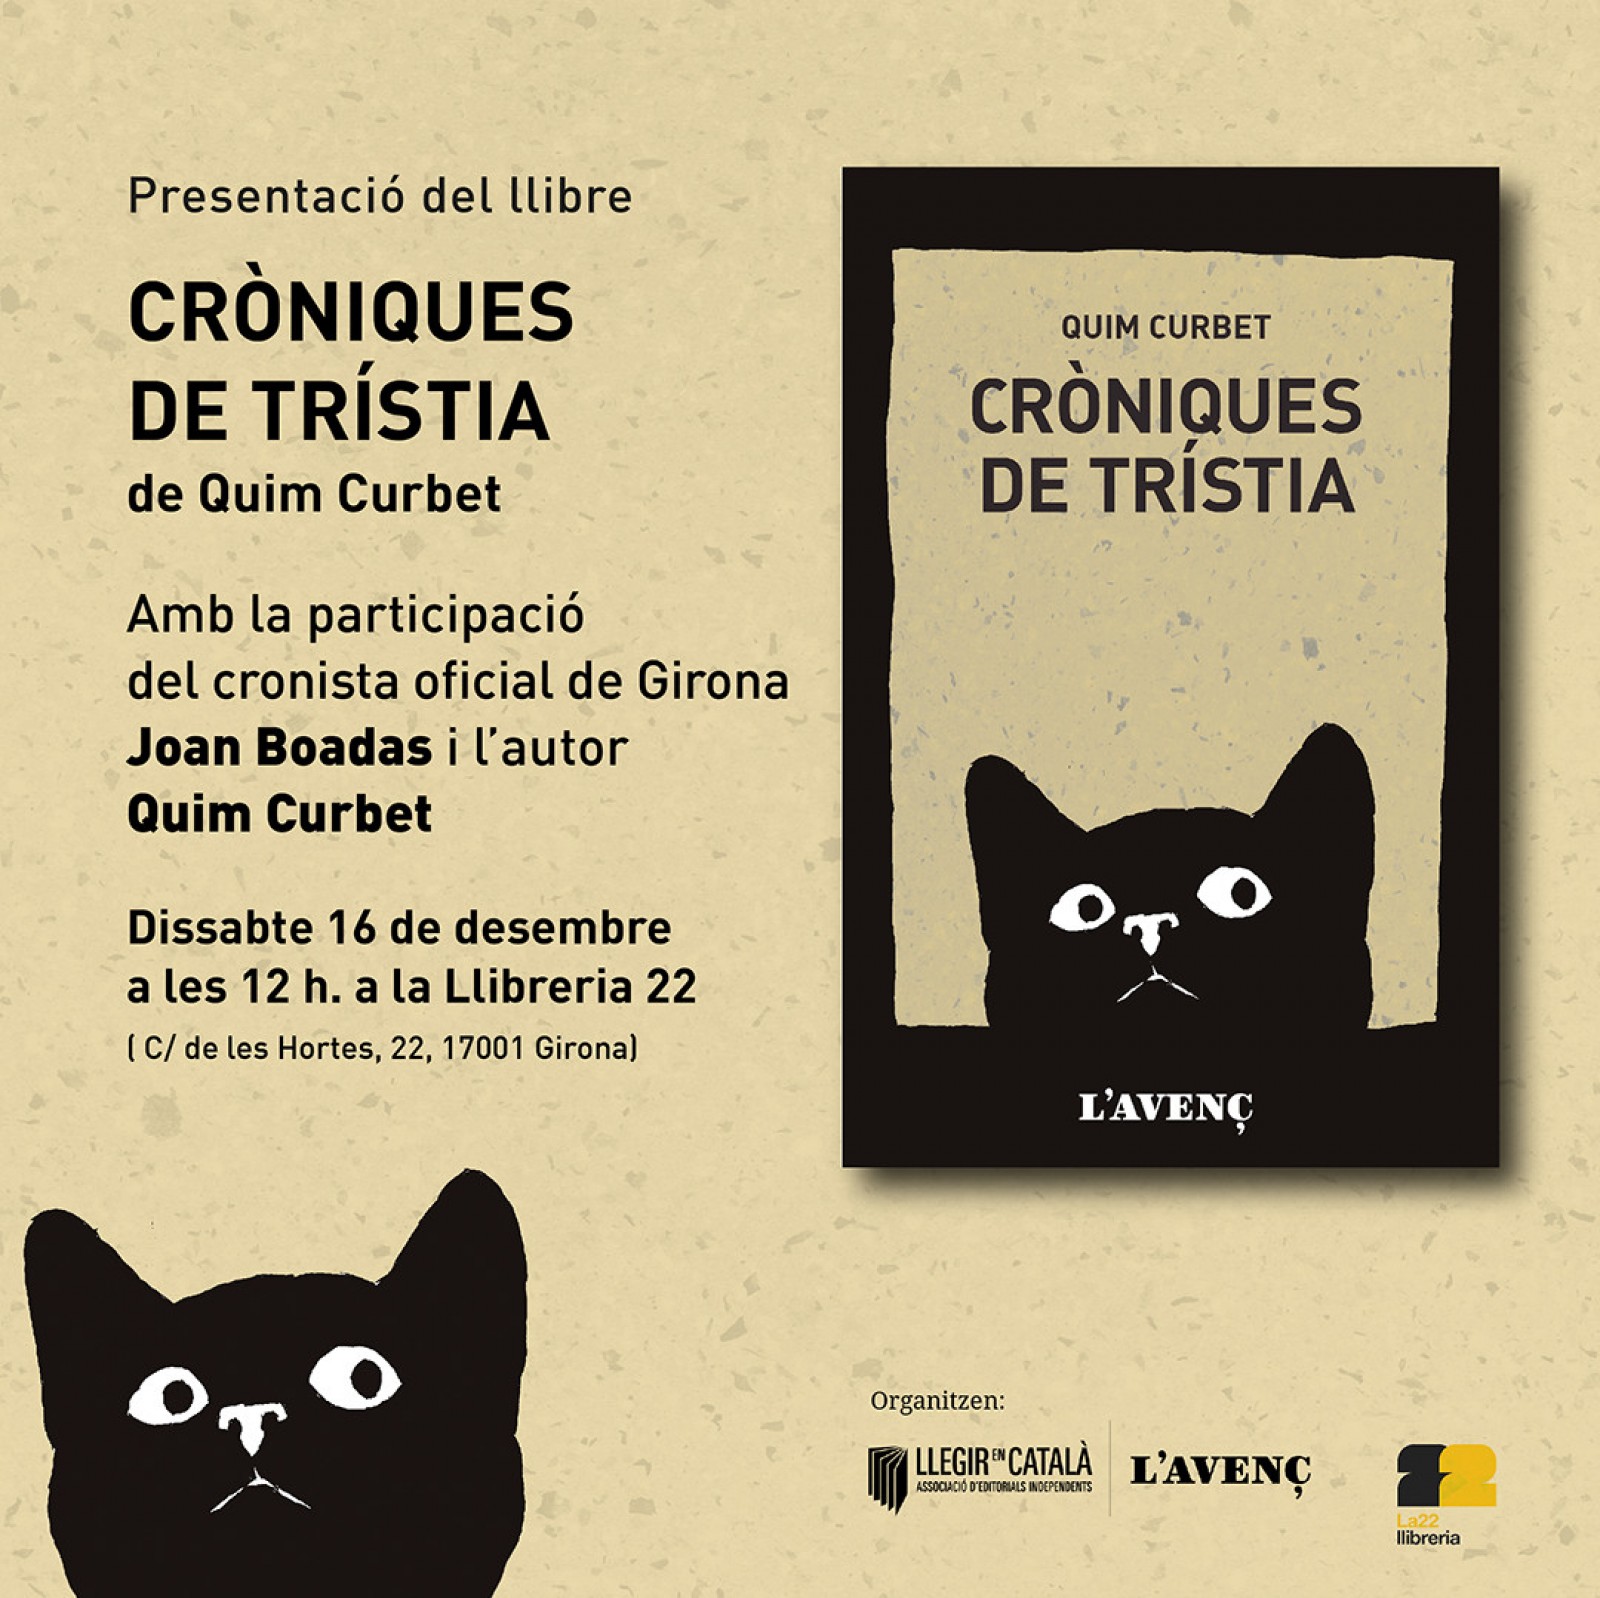 La presentació a Girona serà el 16 de desembre a les 12h